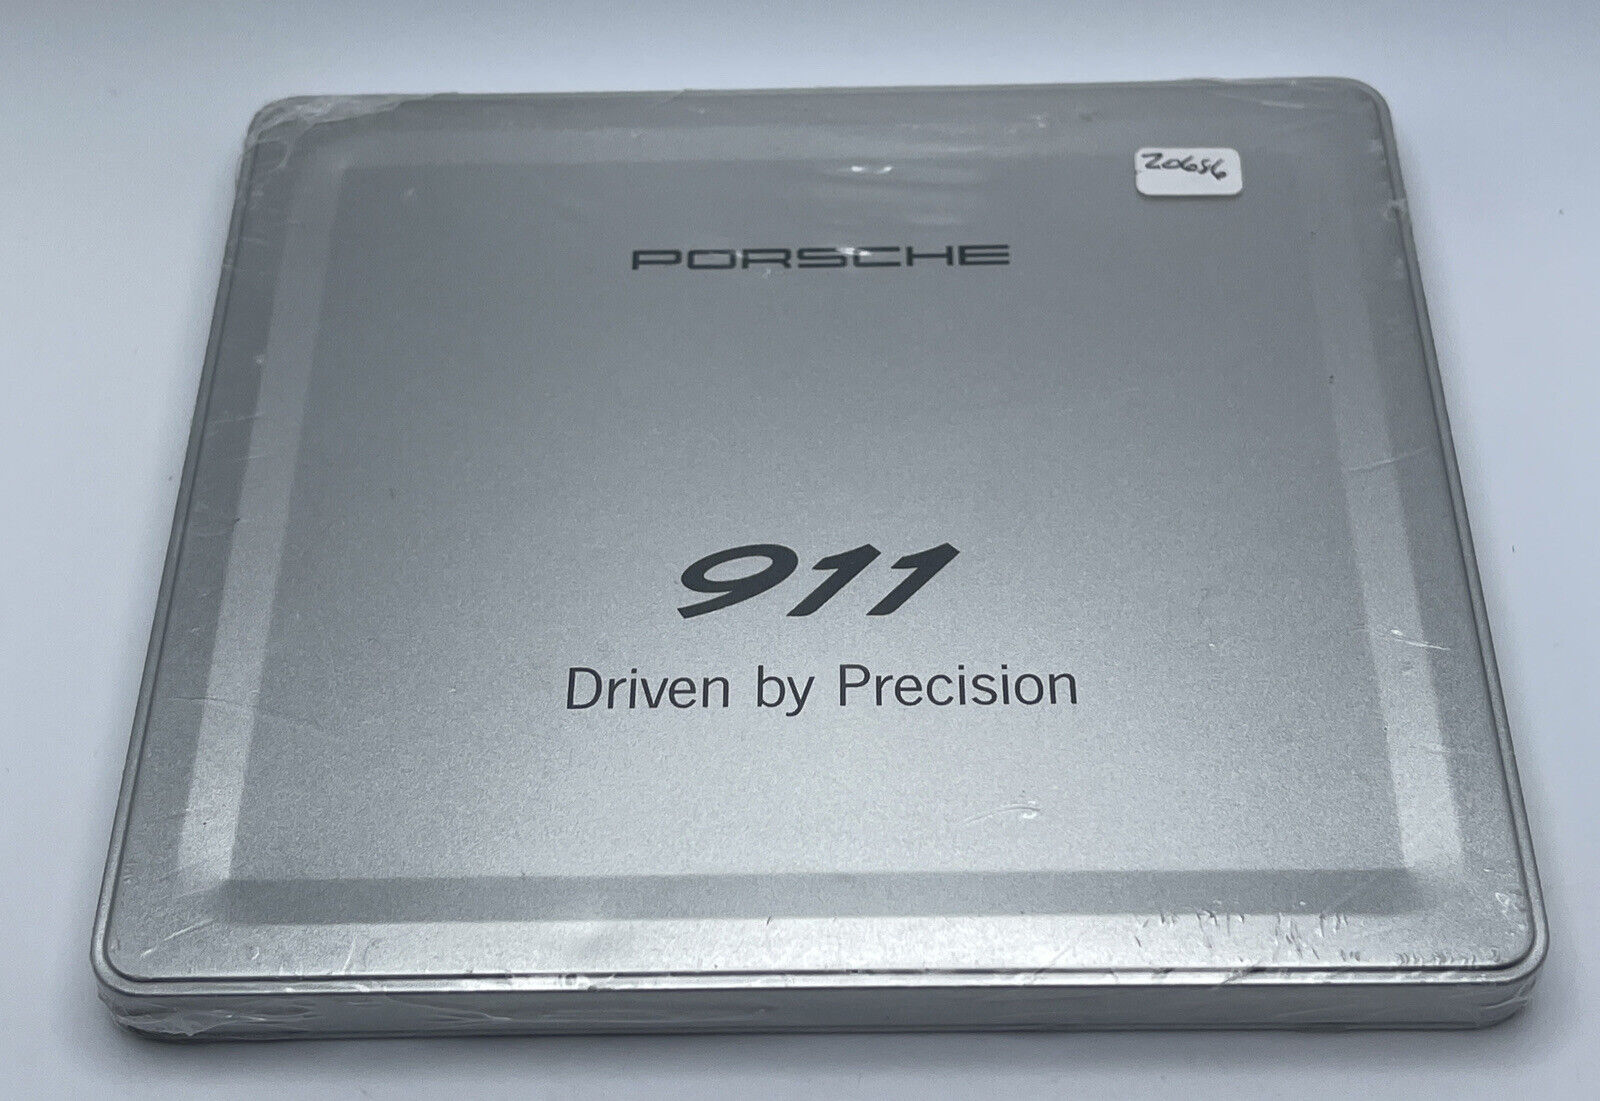 2005-2008 Porsche Driven By Precision 911 Carrera 997 DVD Brochure Music CD-Rom